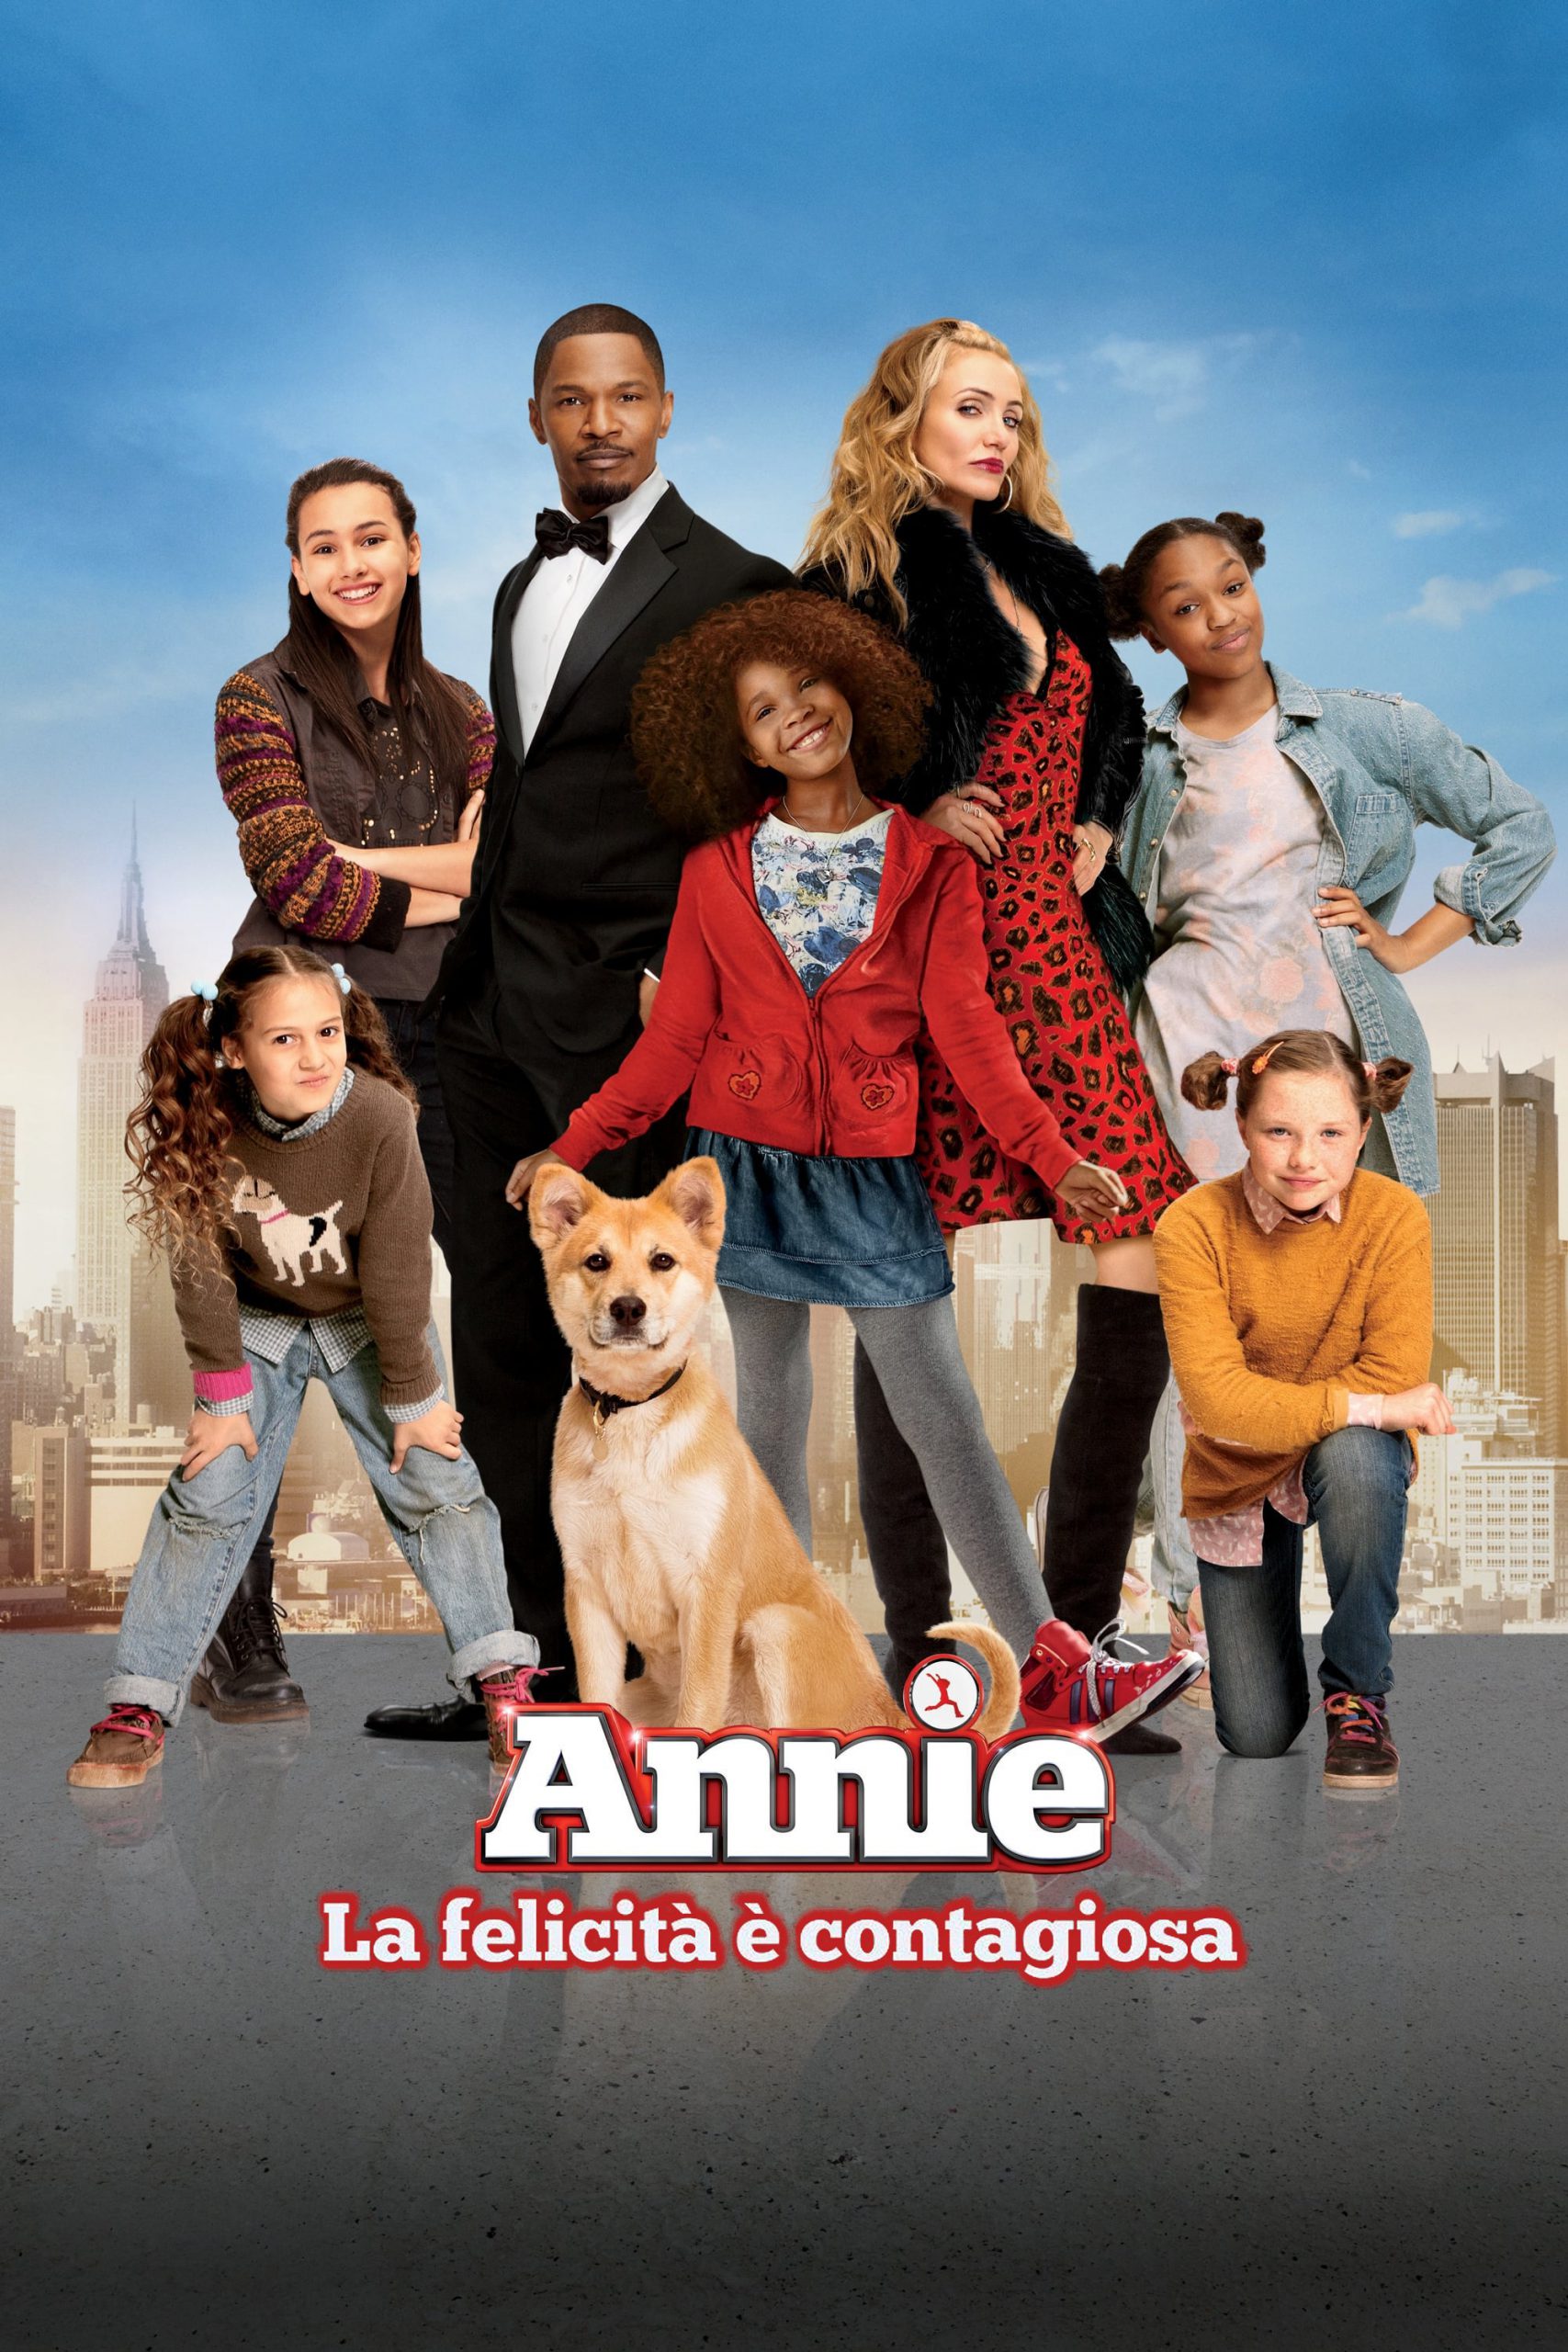 Annie: La felicità è contagiosa [HD] (2015)